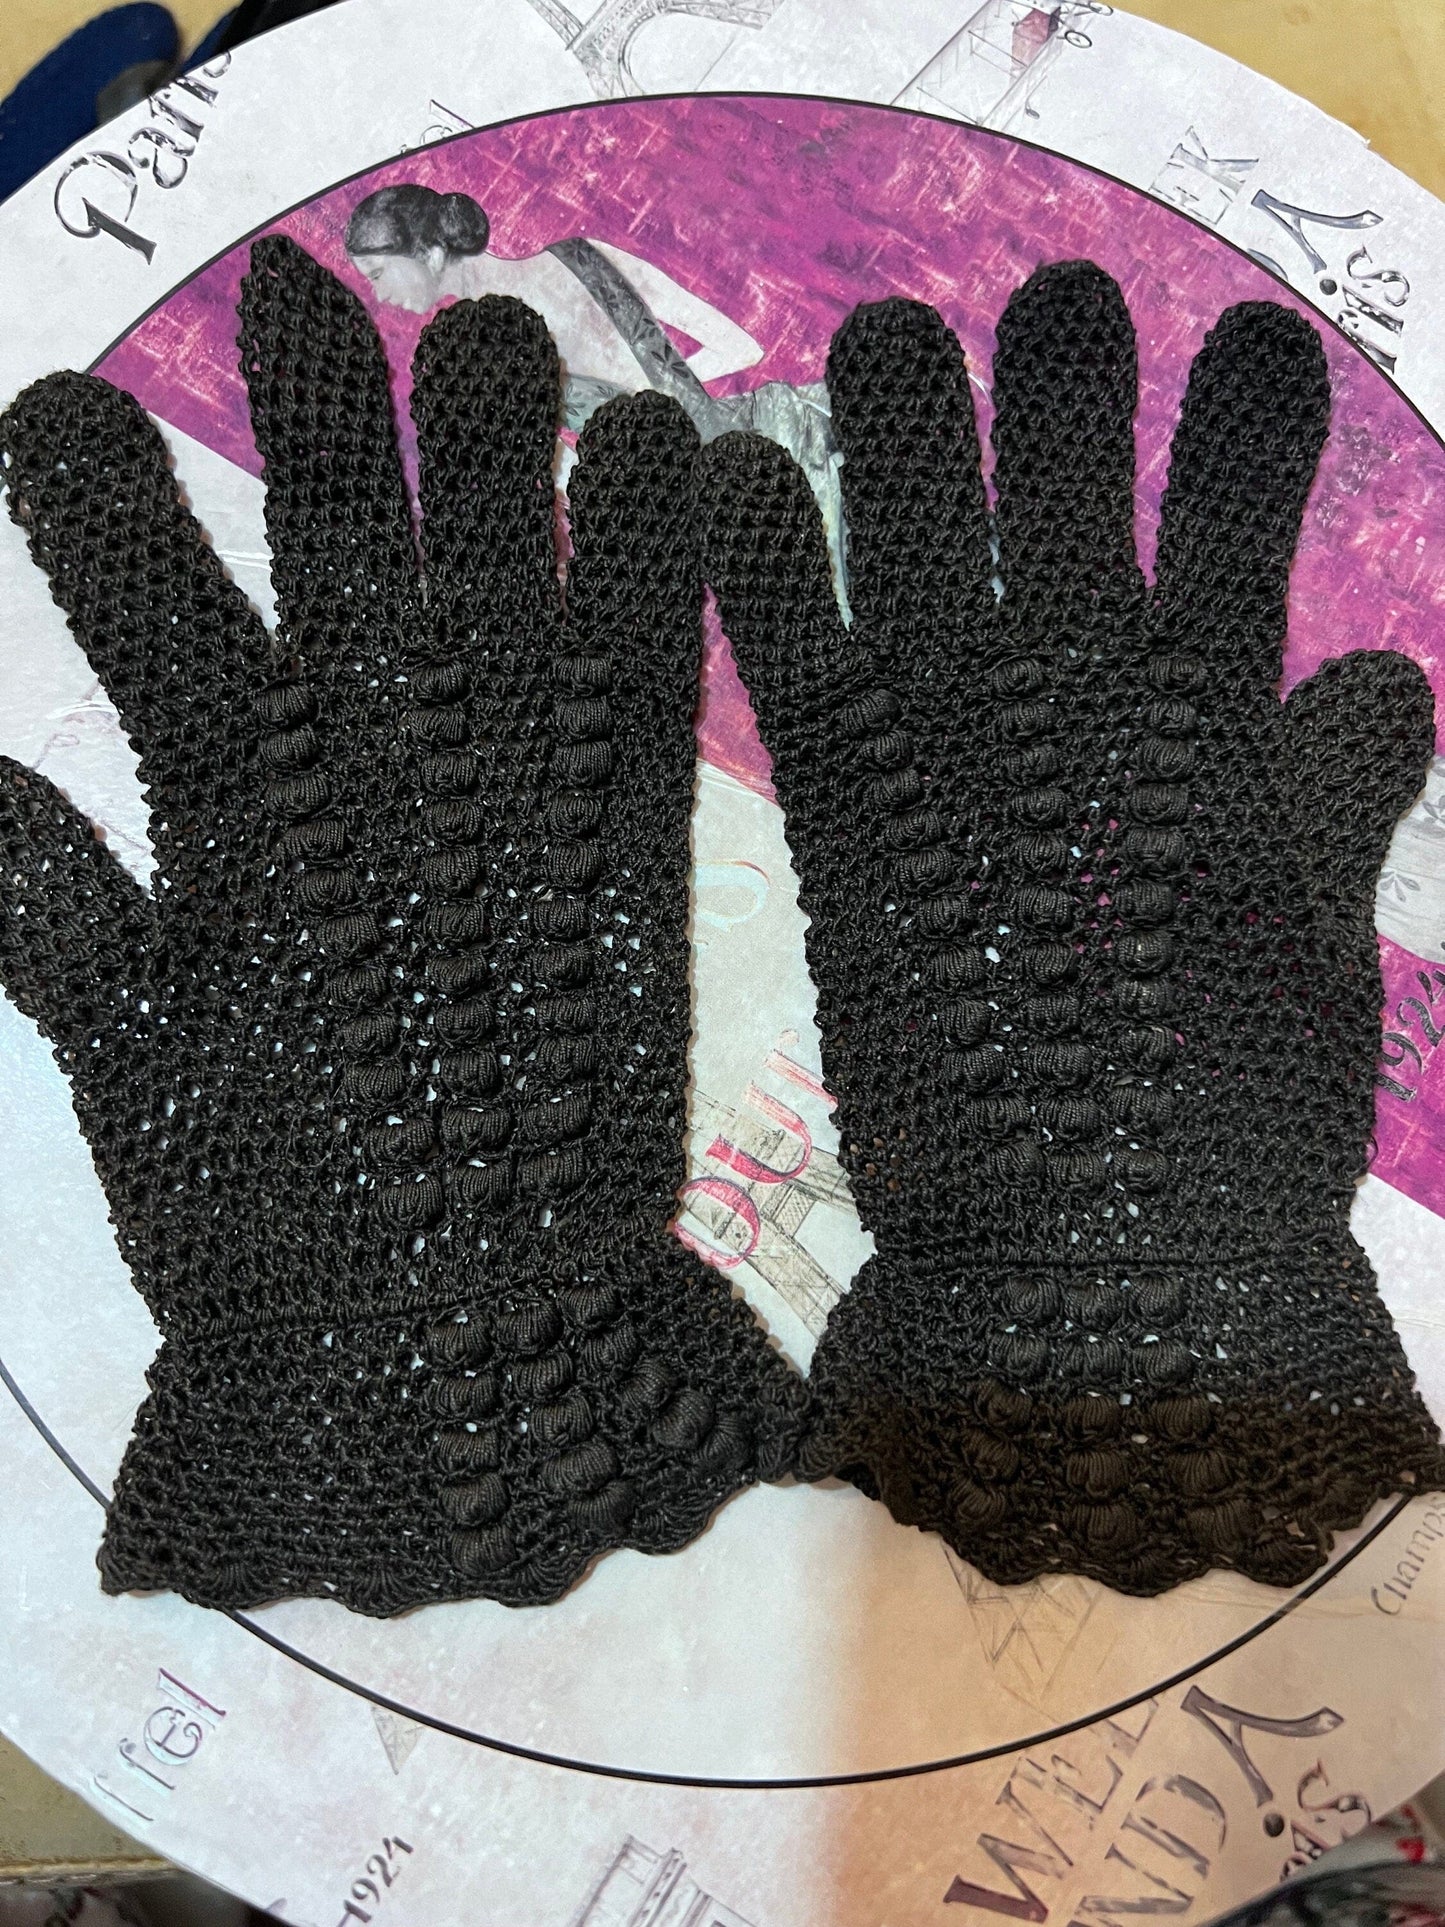 Vintage Ladies Black Stretch lace Gloves - lace  Style Black Gloves -  Size Small Gloves, Ladies Gloves, Black Gloves, lace gloves